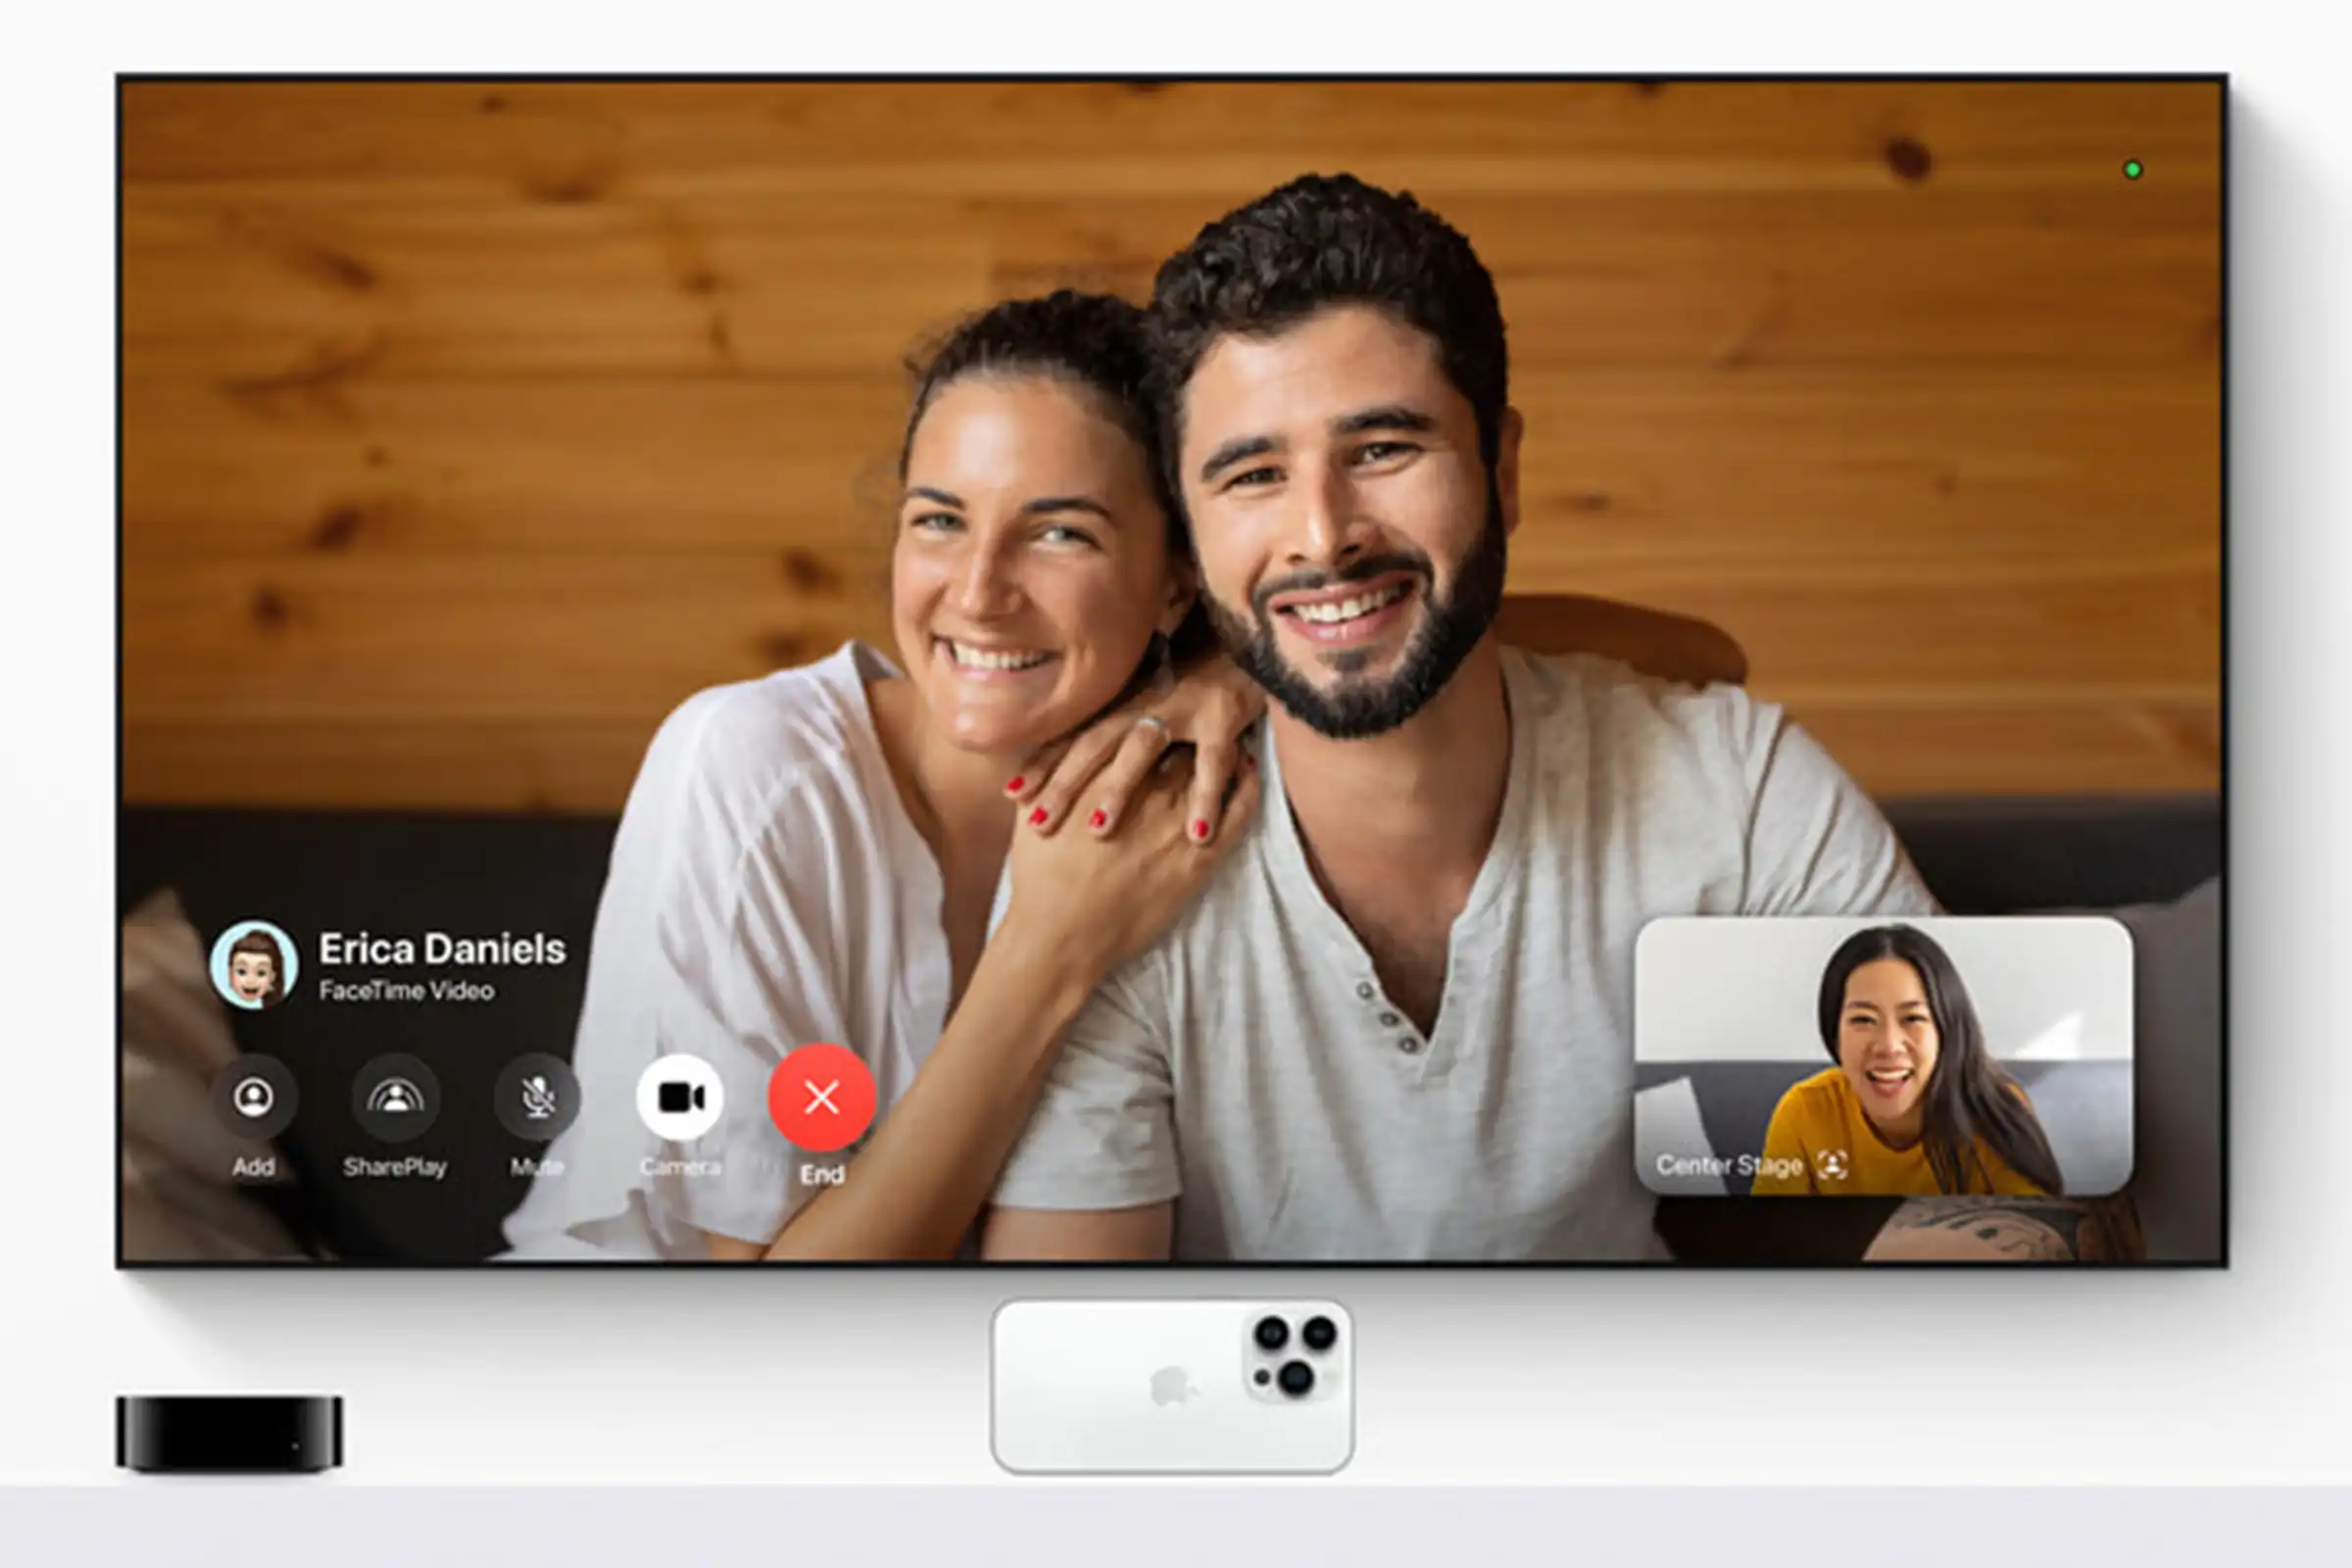 facetime on apple tv 4k